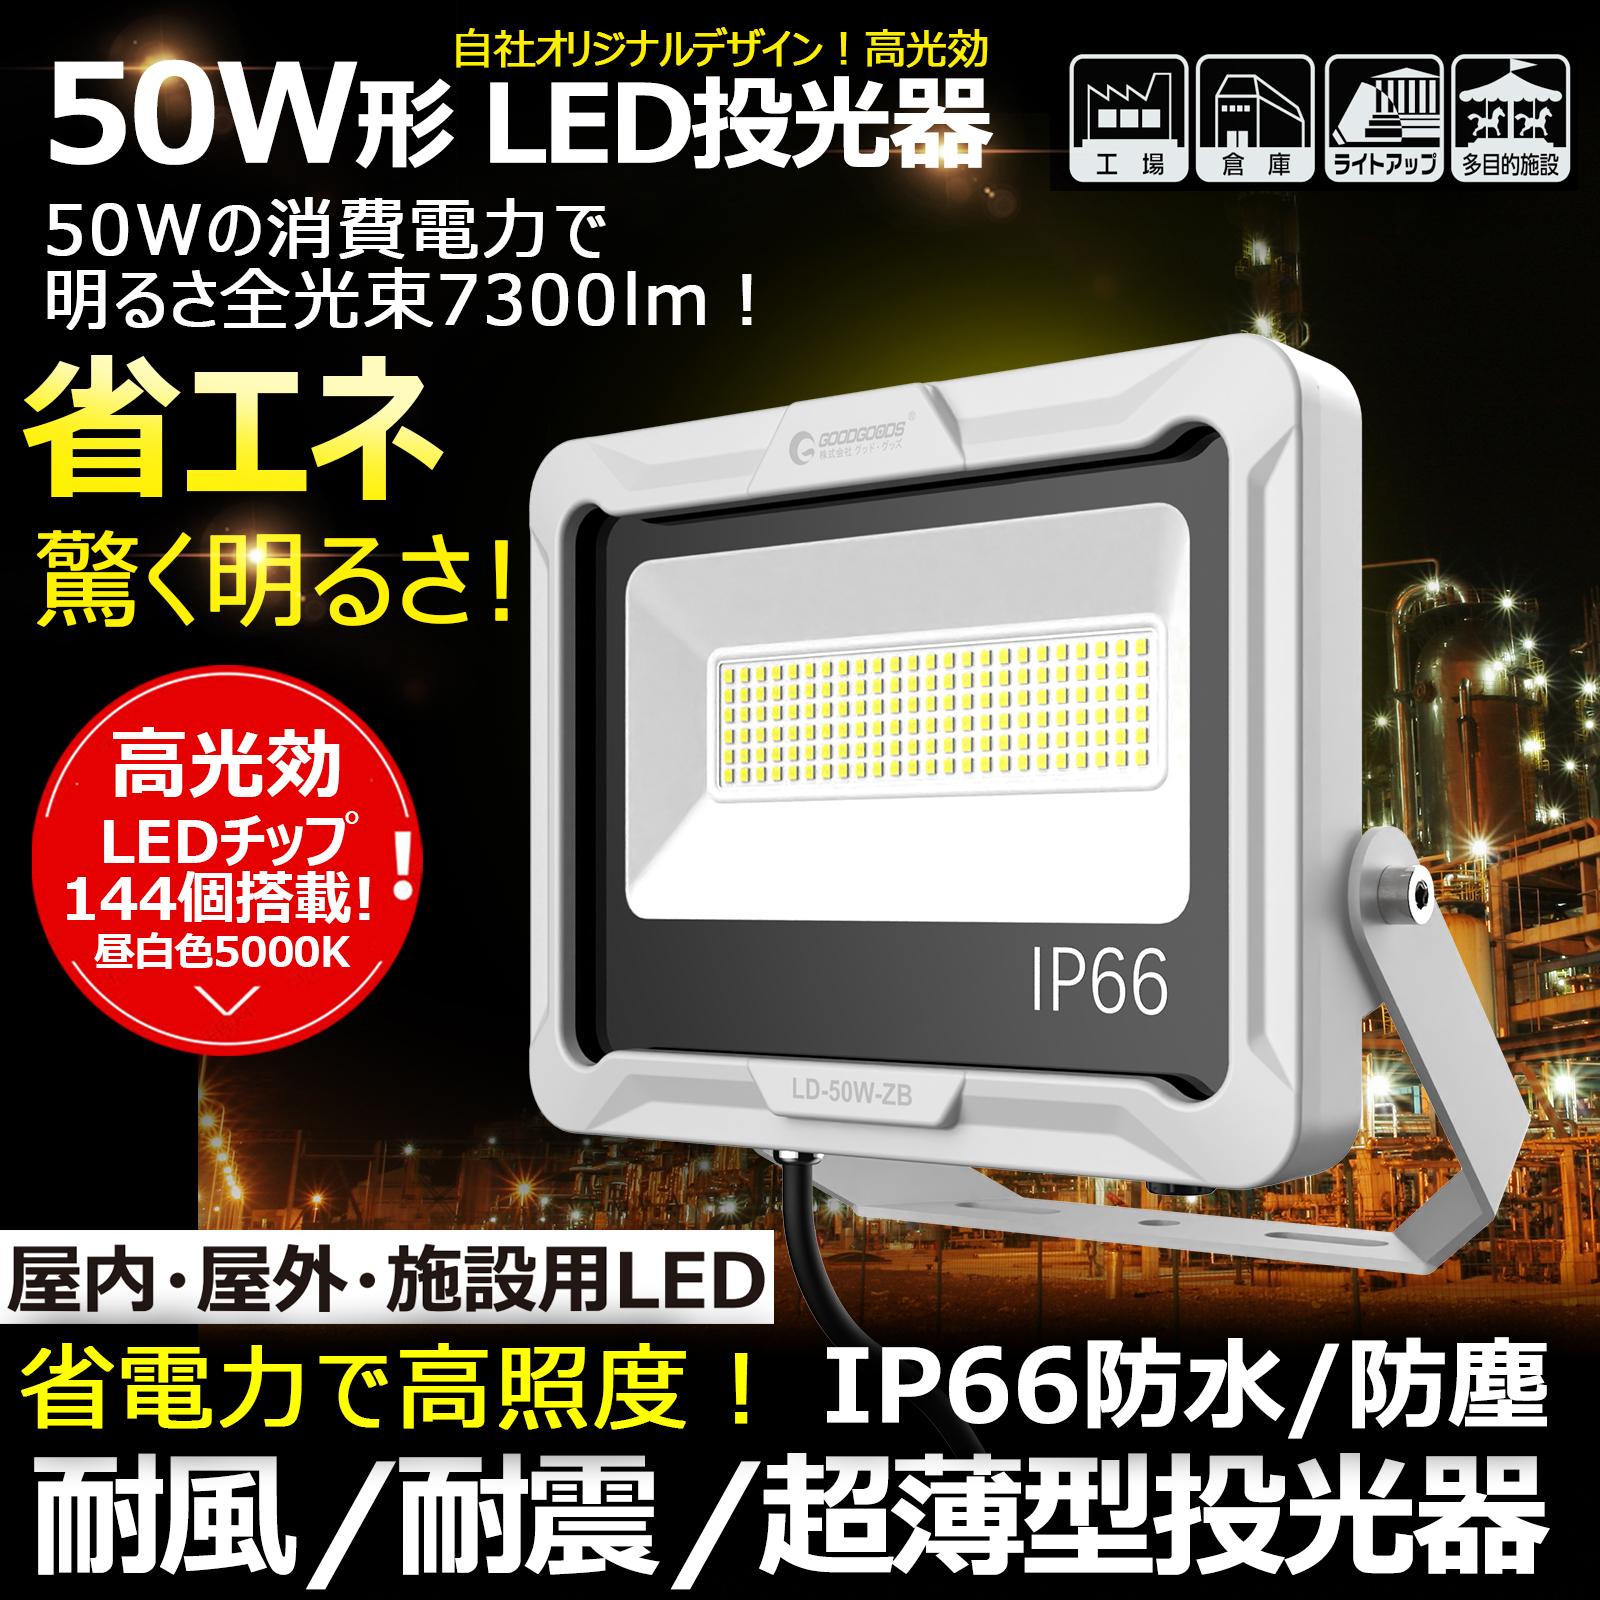 LED投光器 サーチライト 60W 昼白色 広角ライト 5Mコード 屋外防水